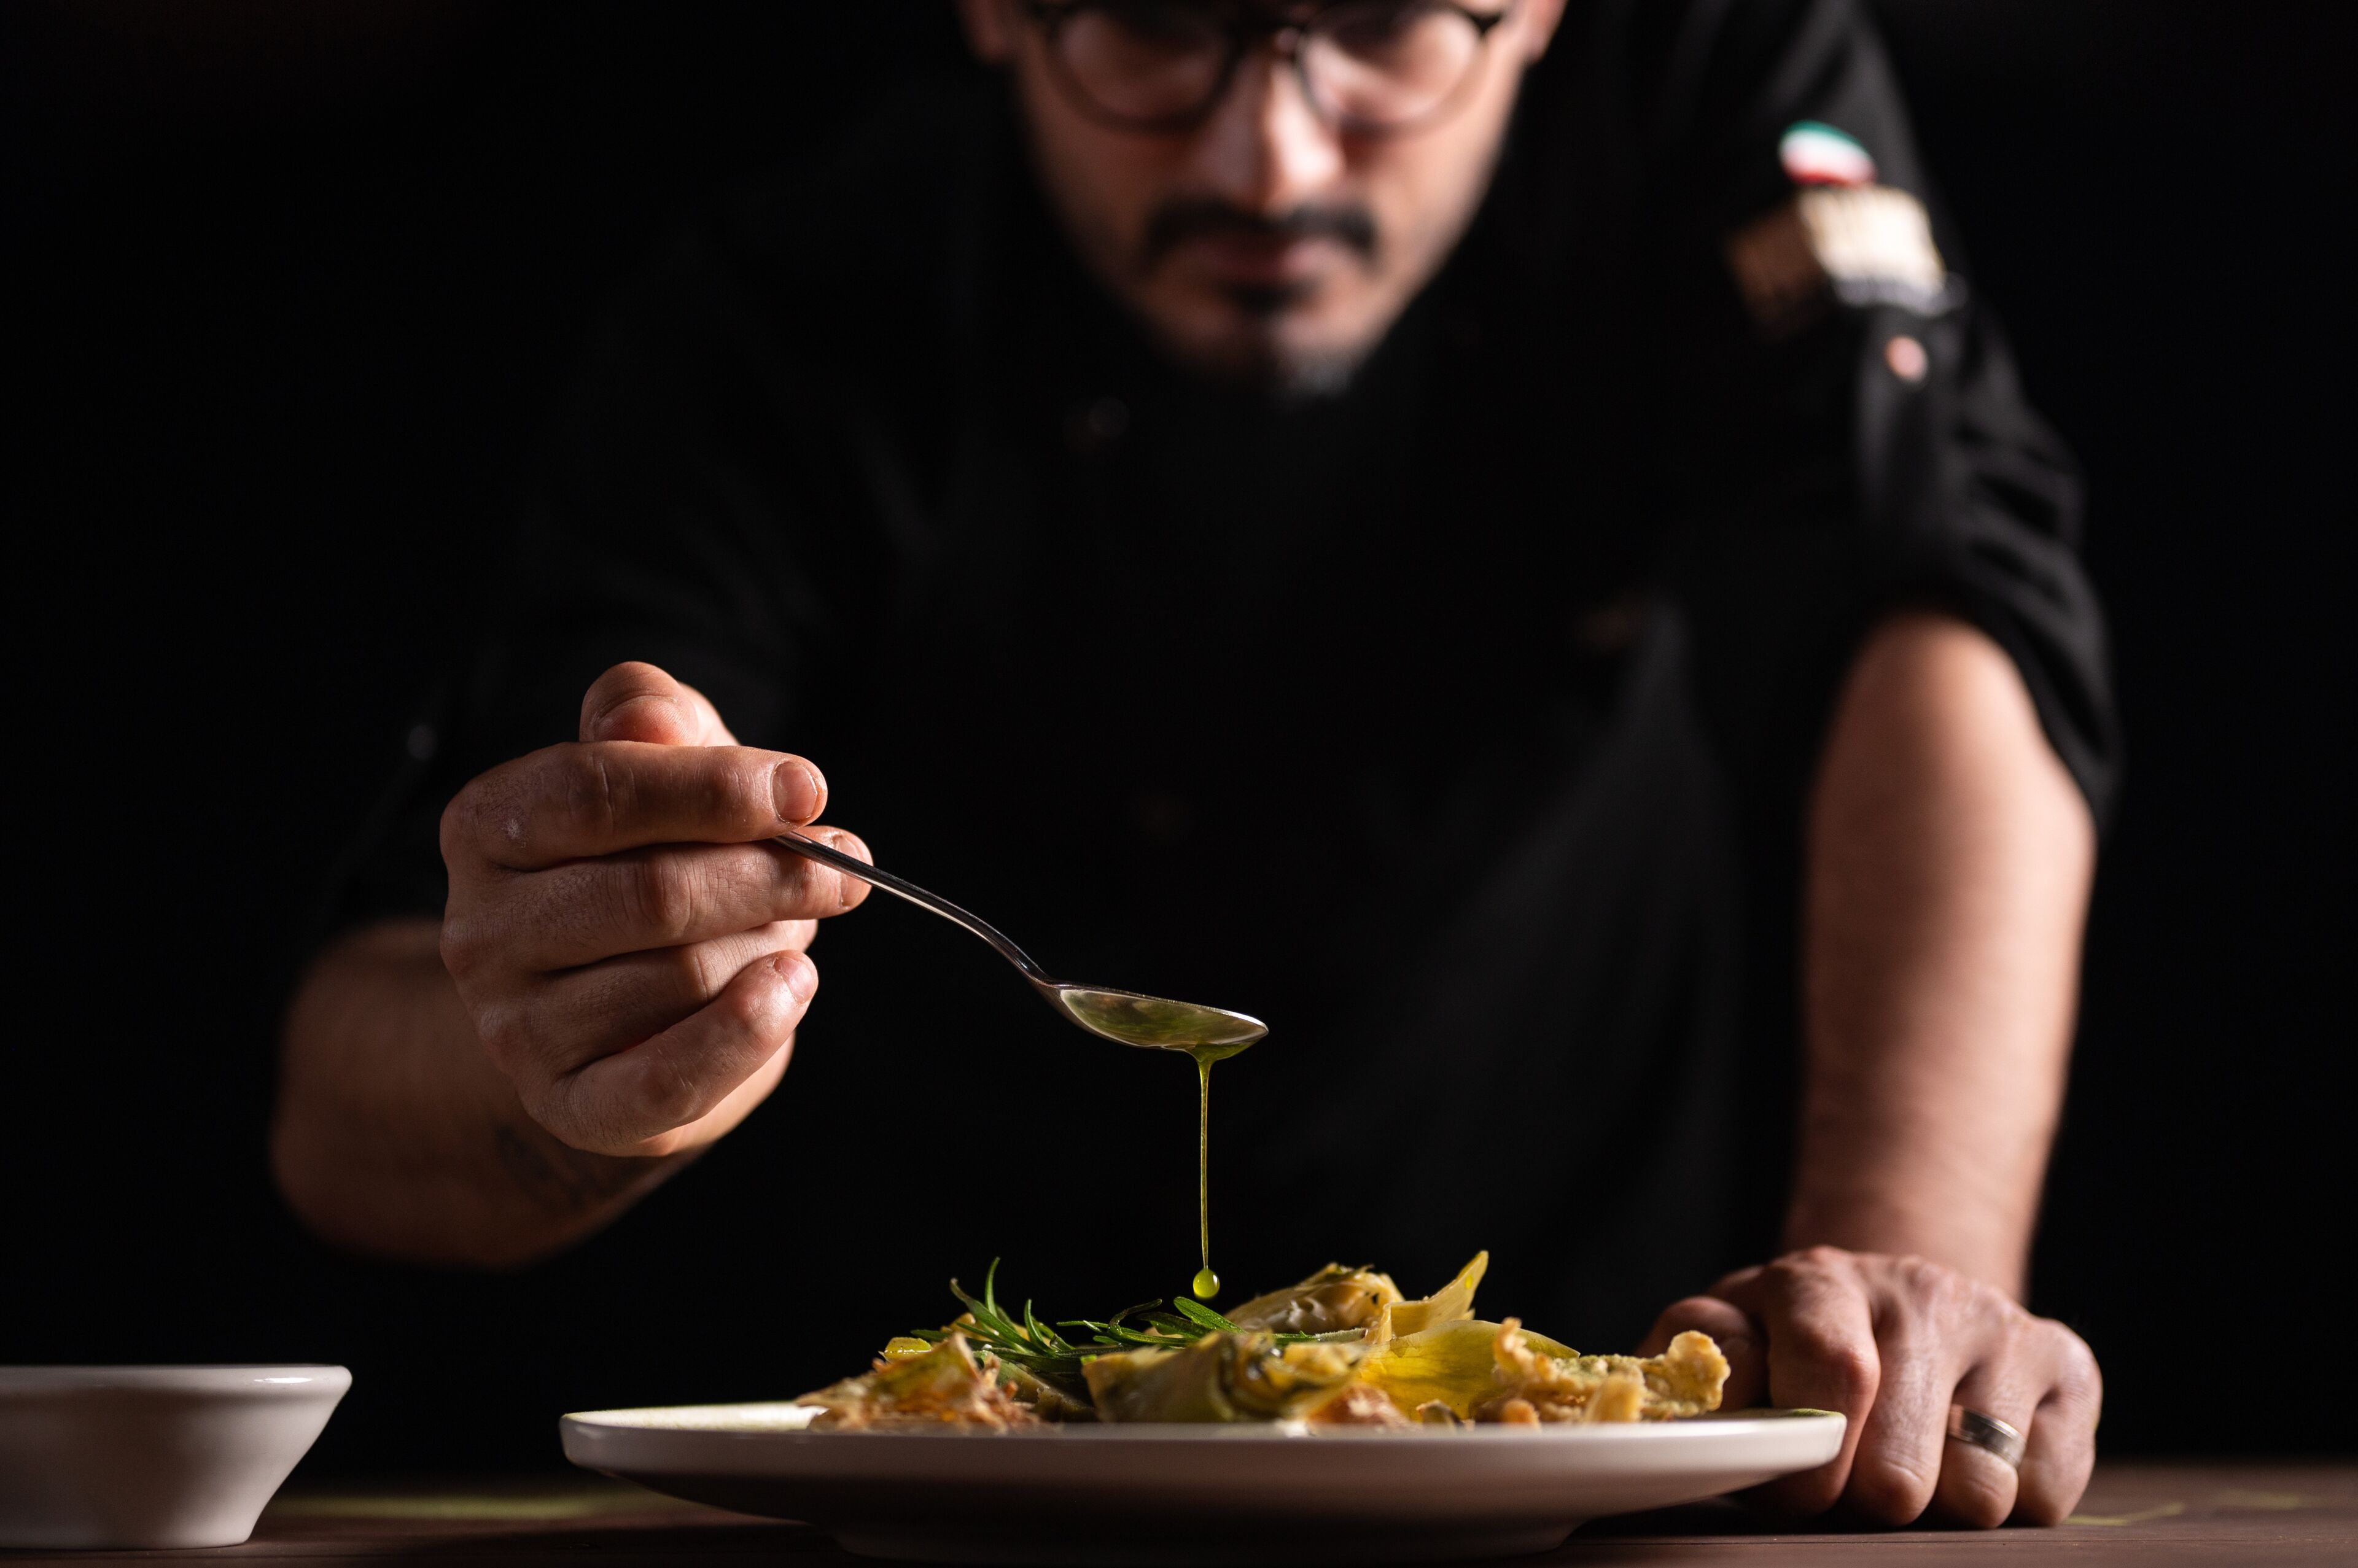 Chef enfocado añadiendo el toque final a un plato gourmet con una cuchara, en una cocina con luz tenue.